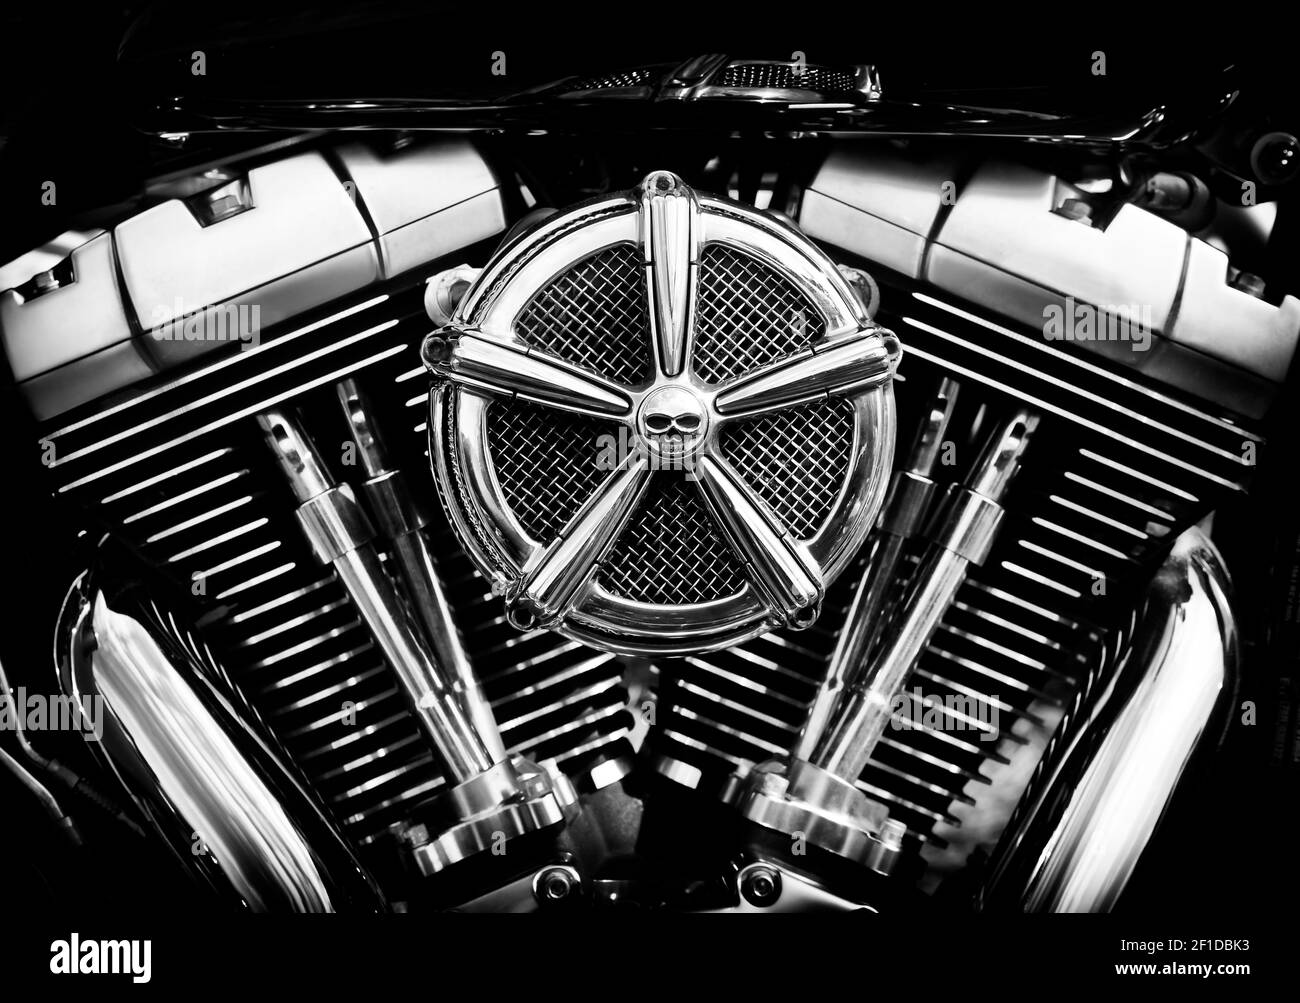 Moteur de moto Harley Davidson. Noir et blanc Banque D'Images